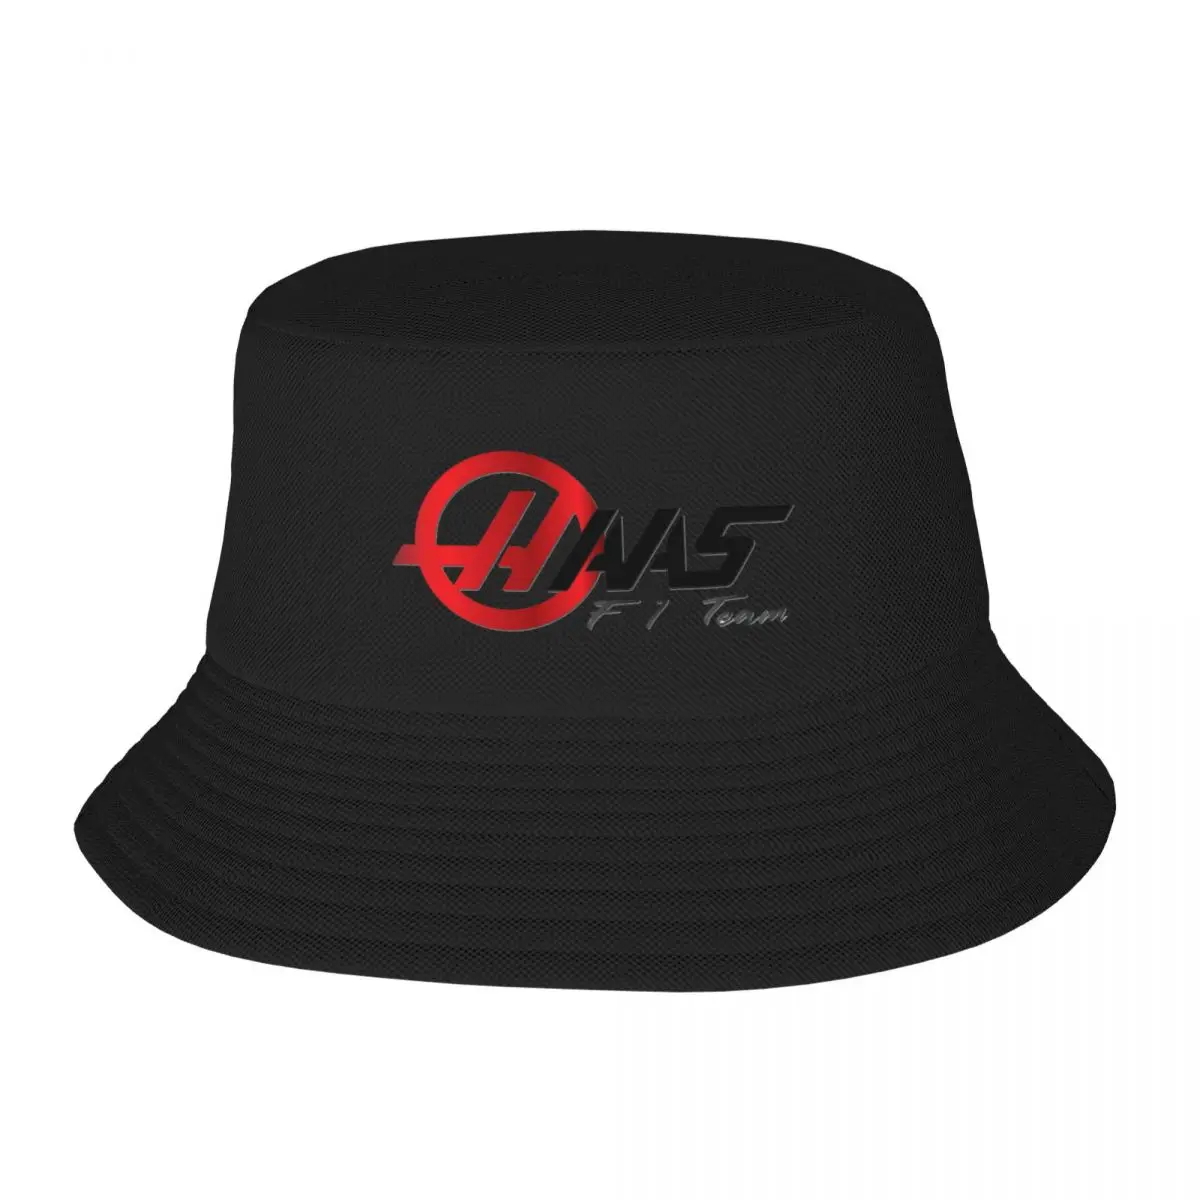 

Панама Haas F1 с логотипом команды, головные уборы для мужчин и женщин, крутые двусторонние рыбацкие шляпы для летней пляжной рыбалки, кепки унисекс